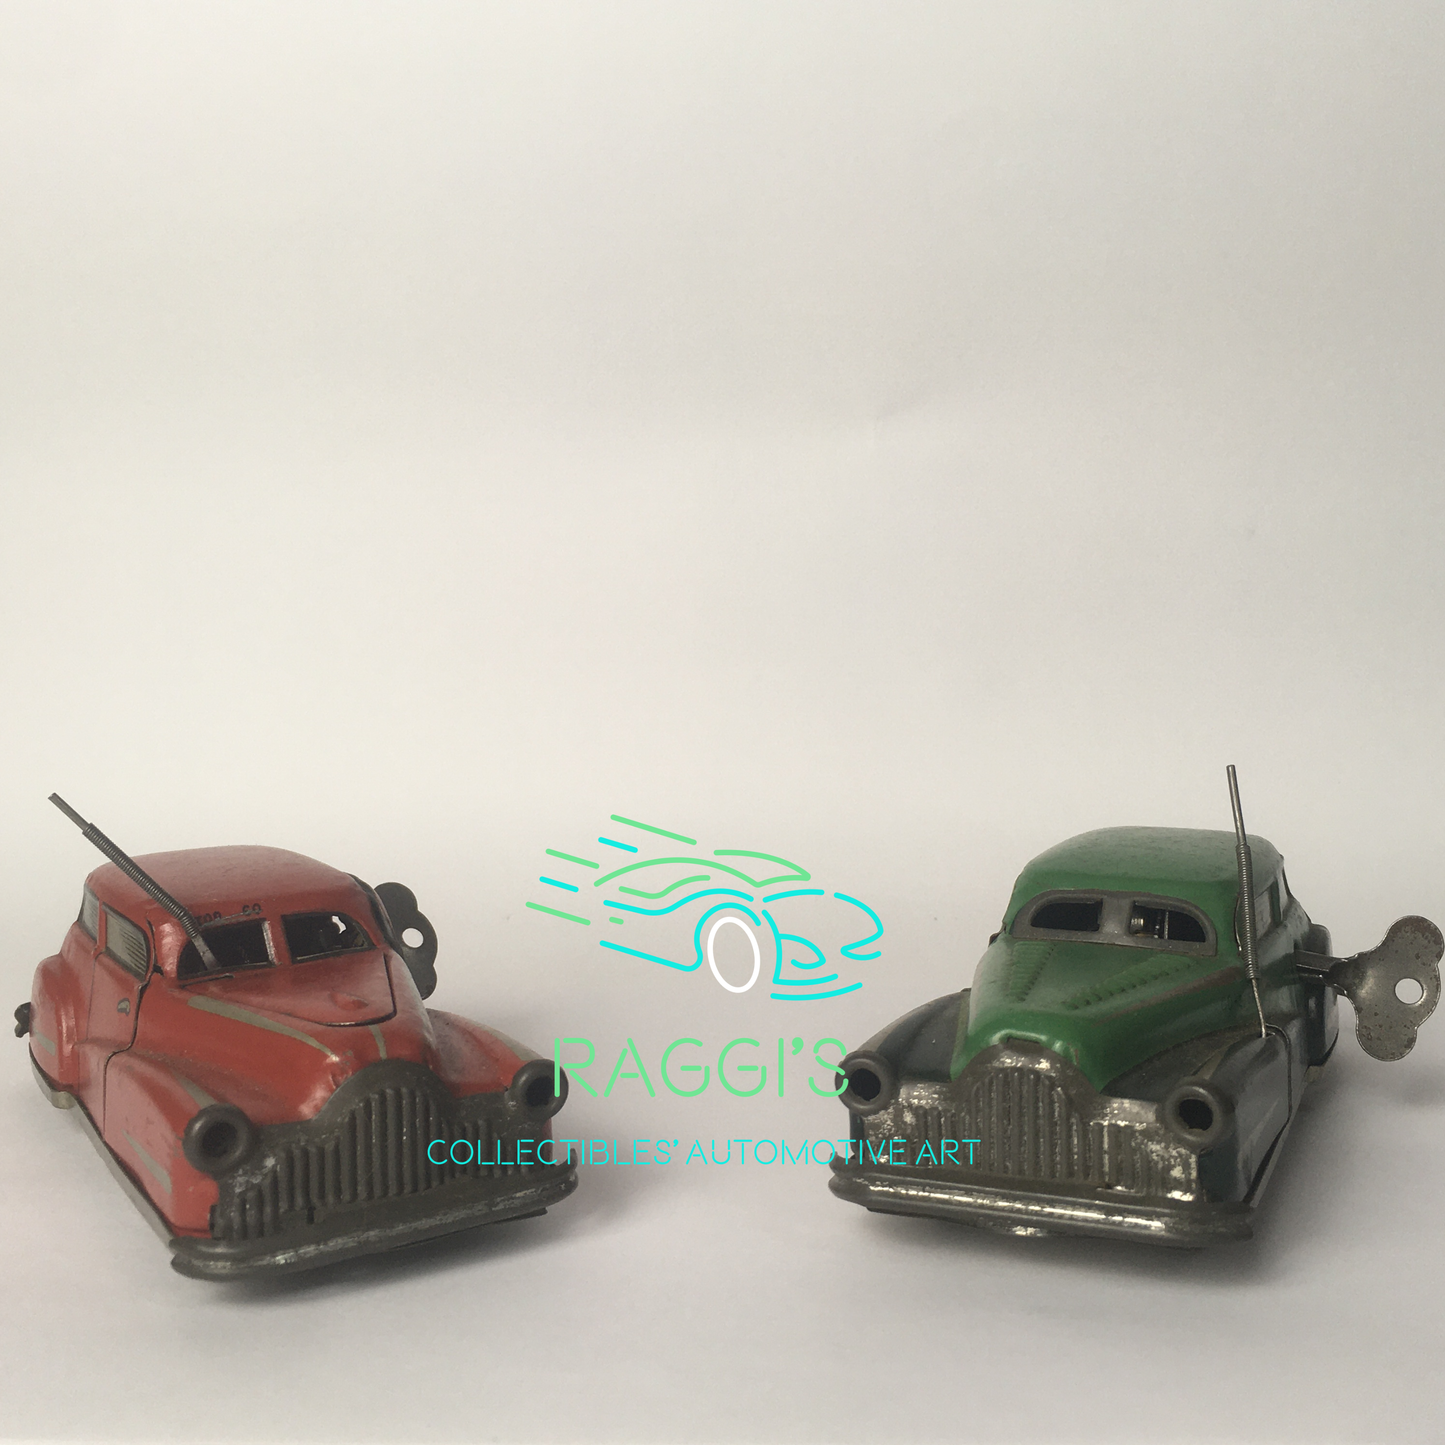 Joustra, Macchina in Latta a Chiavetta e Perfettamente Funzionante Anni 1940 1950 Vintage Toys - Raggi's Collectibles' Automotive Art